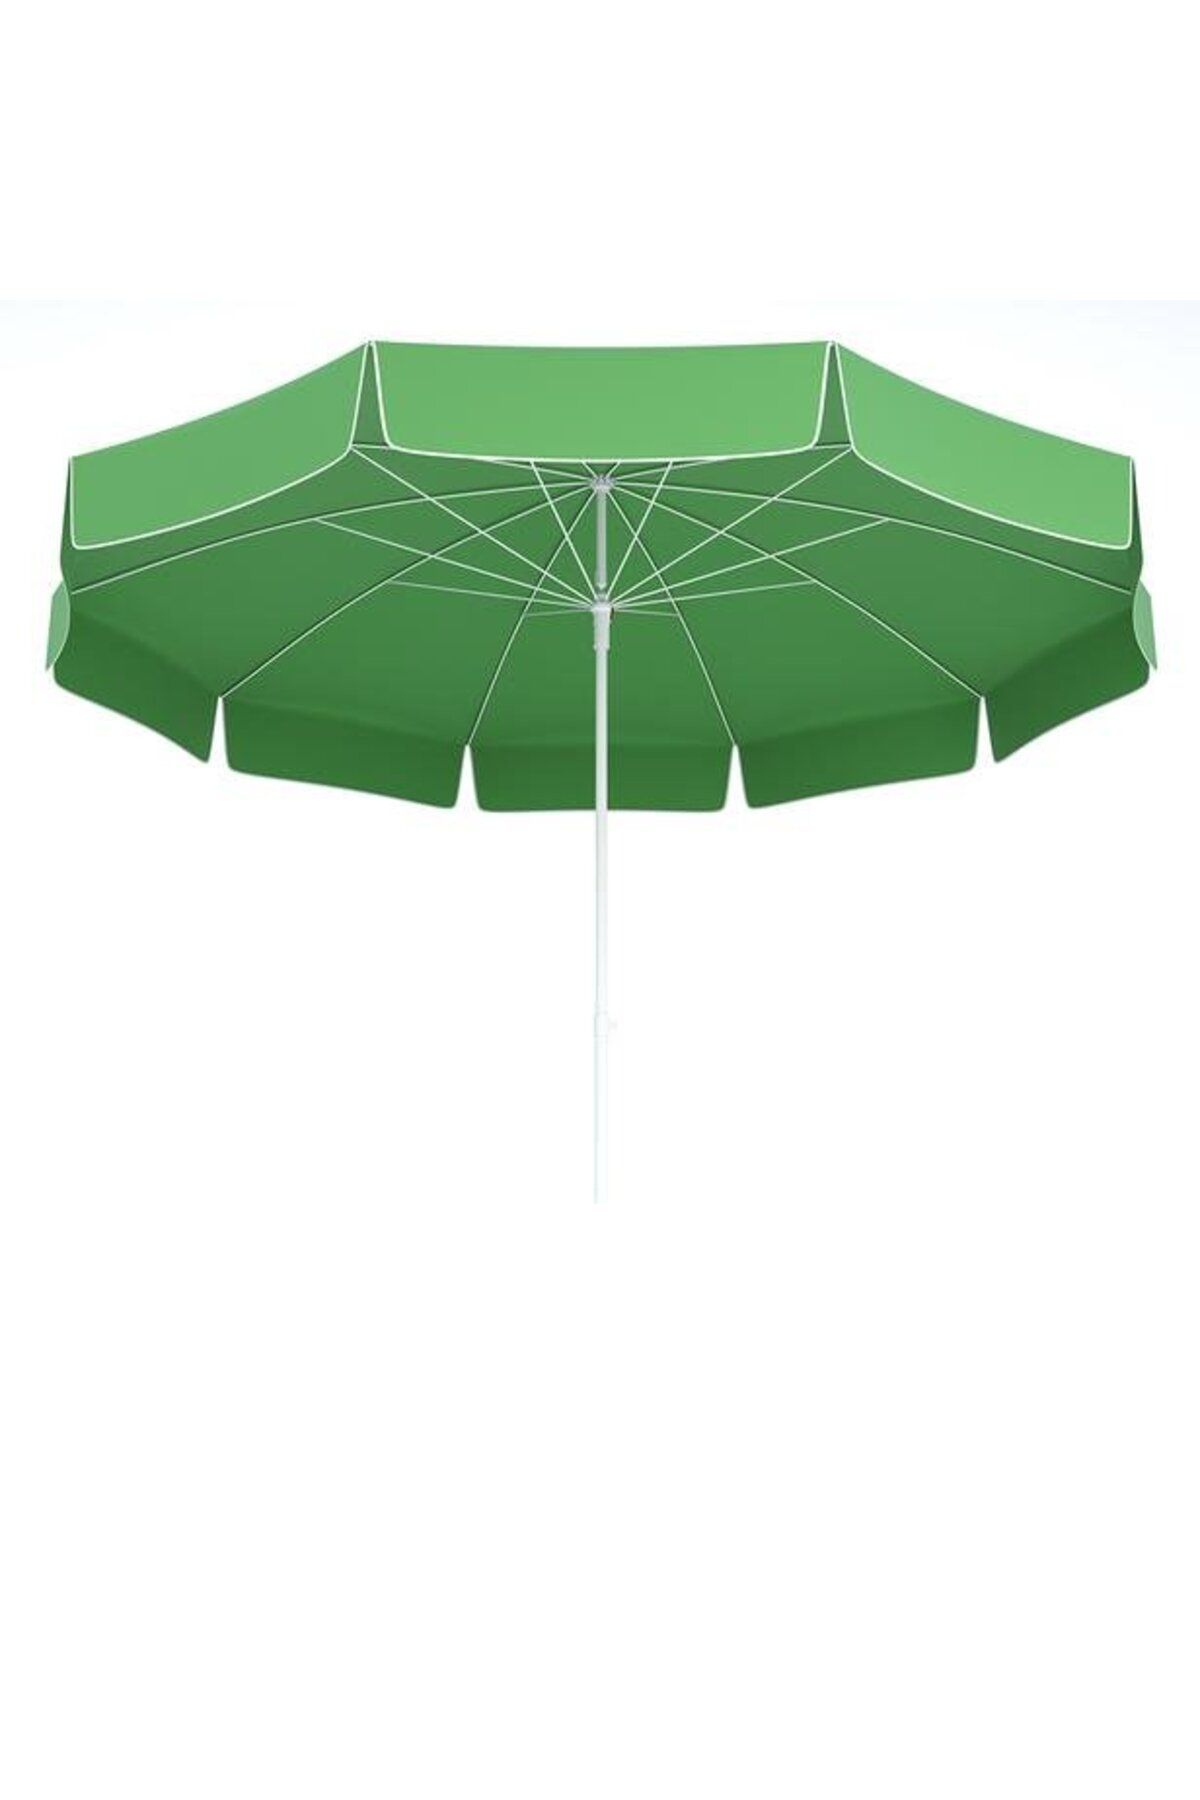 Tevalli 200 Q Elite Çantalı Plaj Şemsiye - Açık Yeşil  (  1  ADET  )